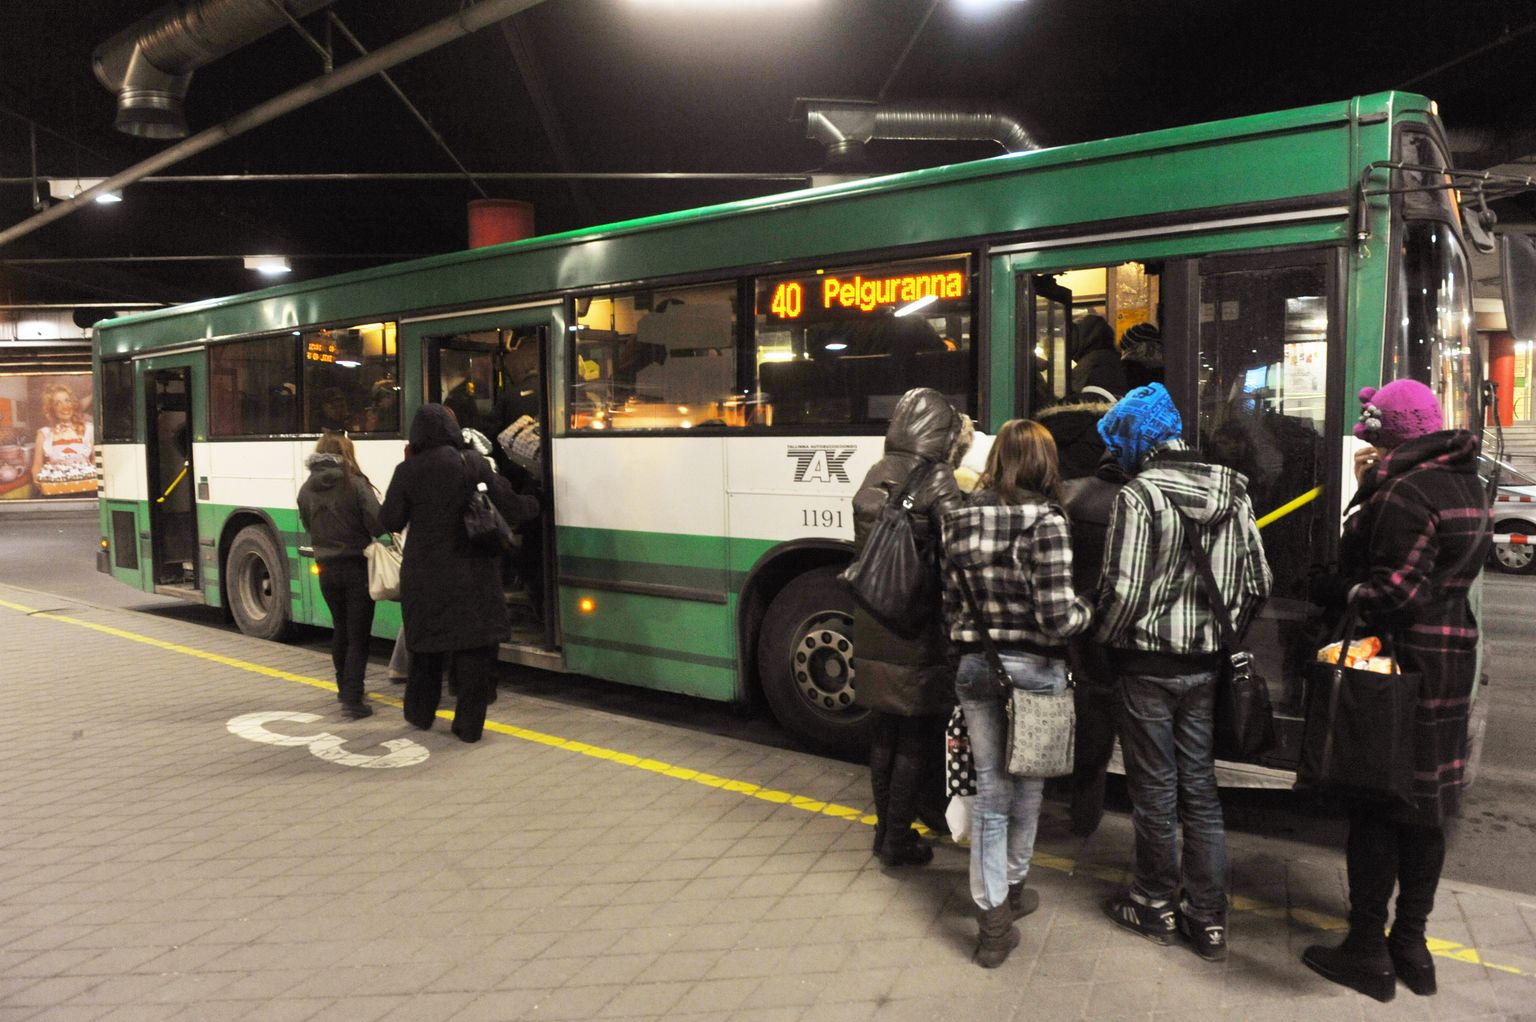 Üks ööbussiliin võiks noortevolikogu hinnangul olla Pelguranda sõitev buss nr 40.